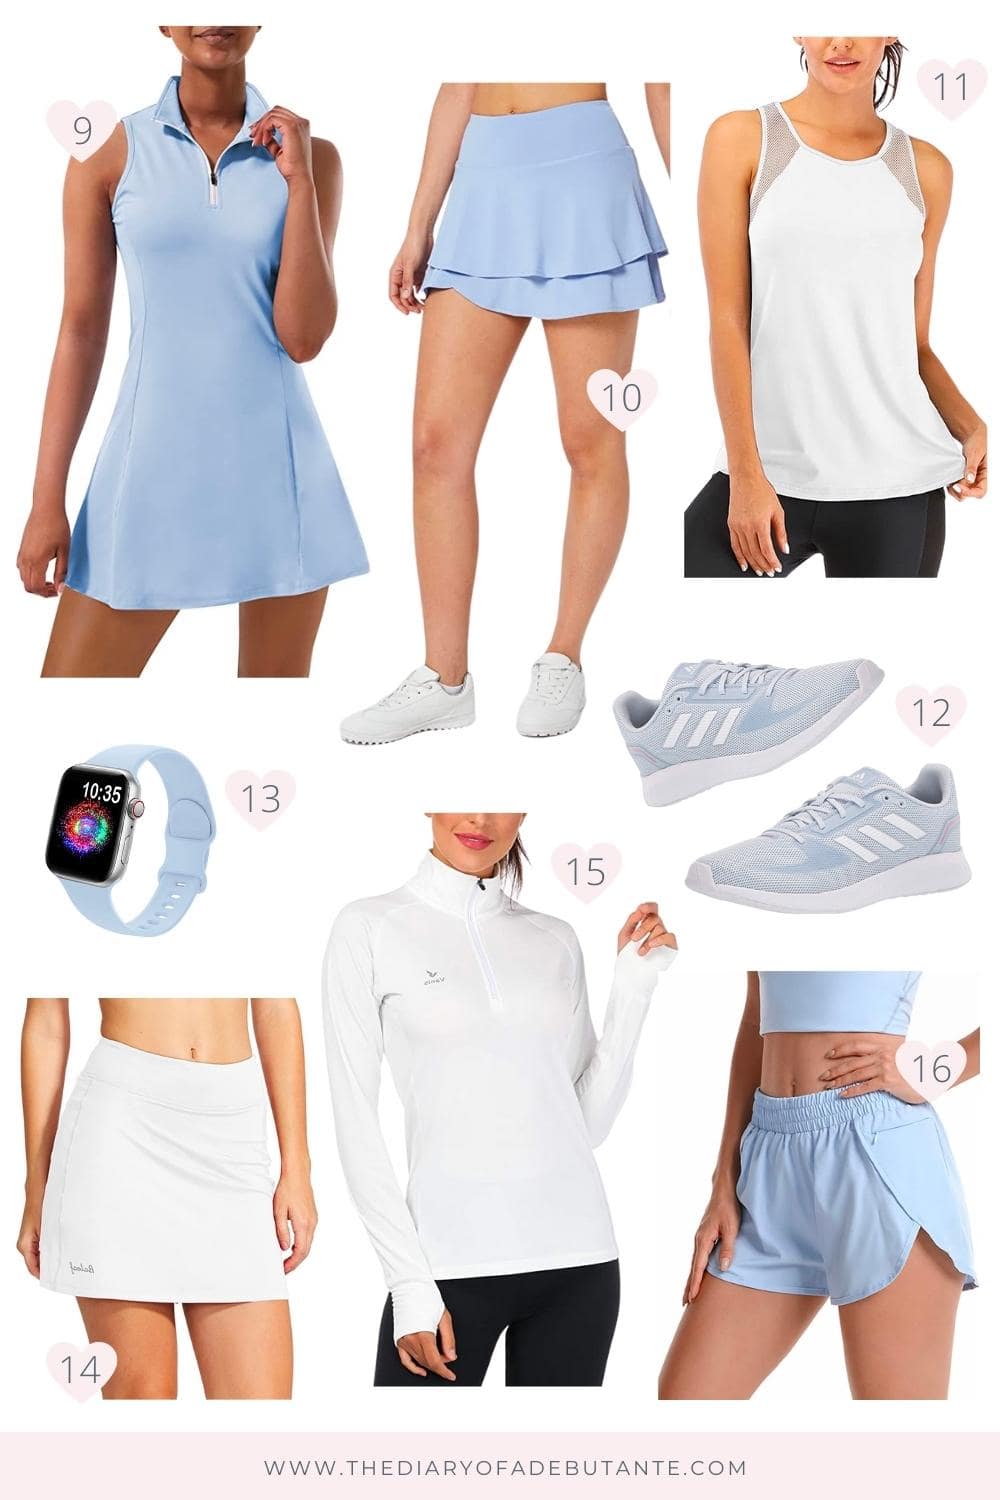 Доступный модный блогер Стефани Зяйка собрала несколько симпатичных теннисных юбок и женских теннисных нарядов в «Дневнике дебютантки»!